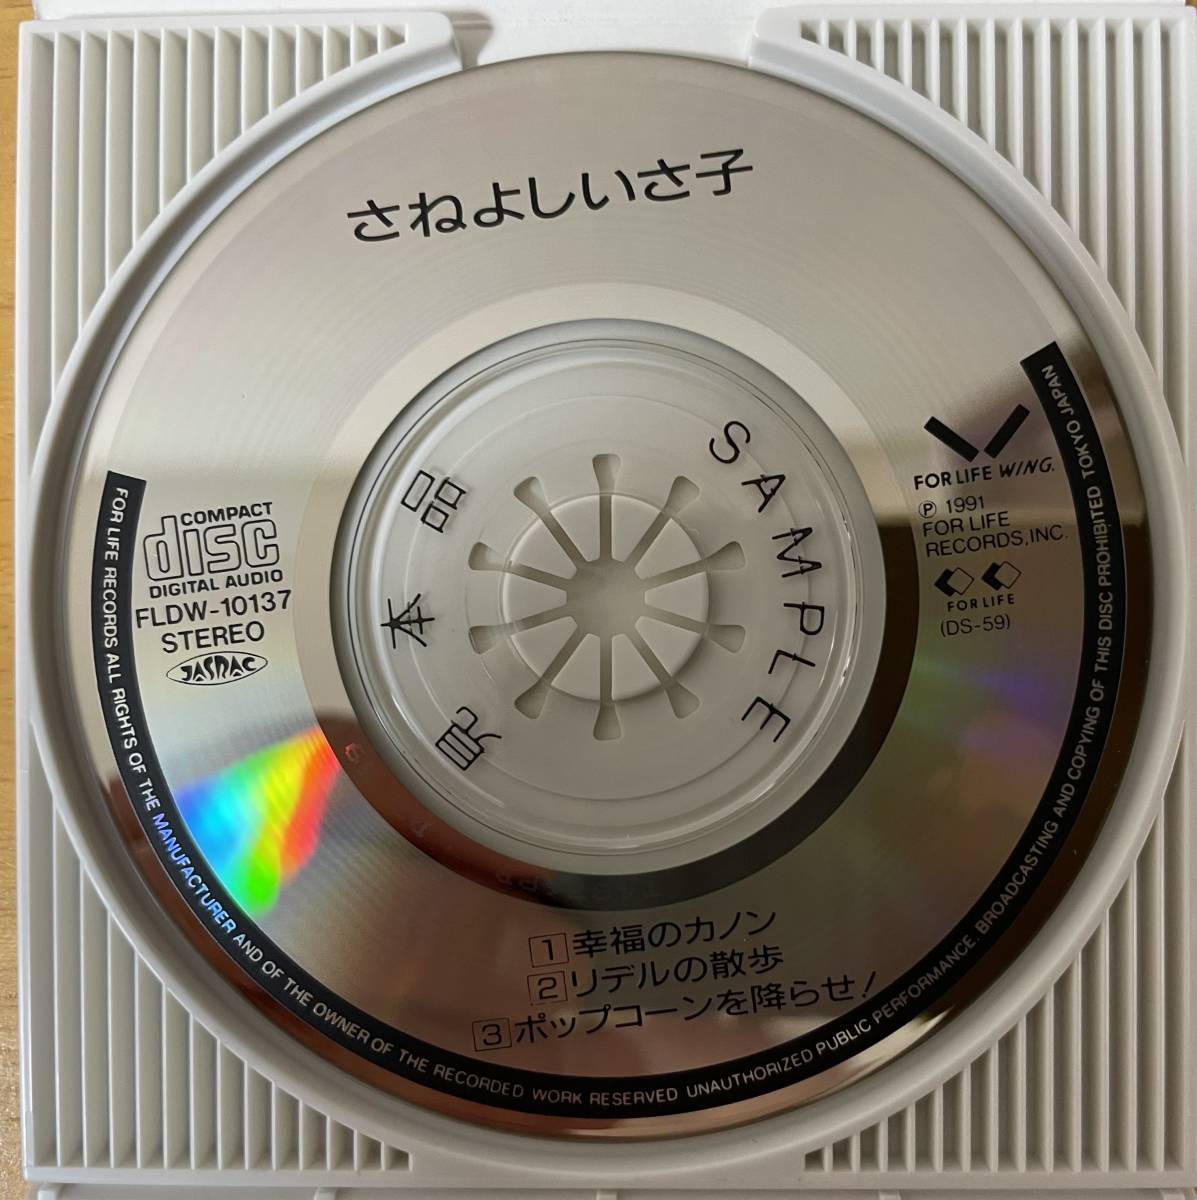 * Saneyoshi Isako /. luck. ka non 8cm CD single [ FOR LIFE FLDW-10137 ]SAMPLE CD